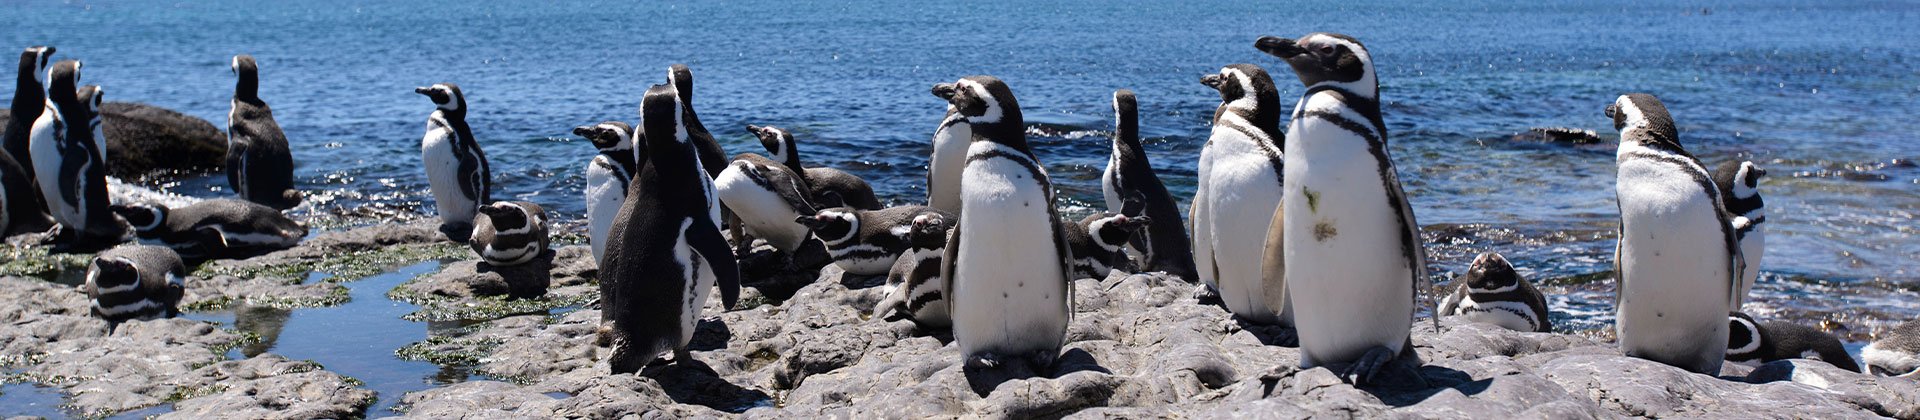 Magellanic penguins, Peninsula, Valdes